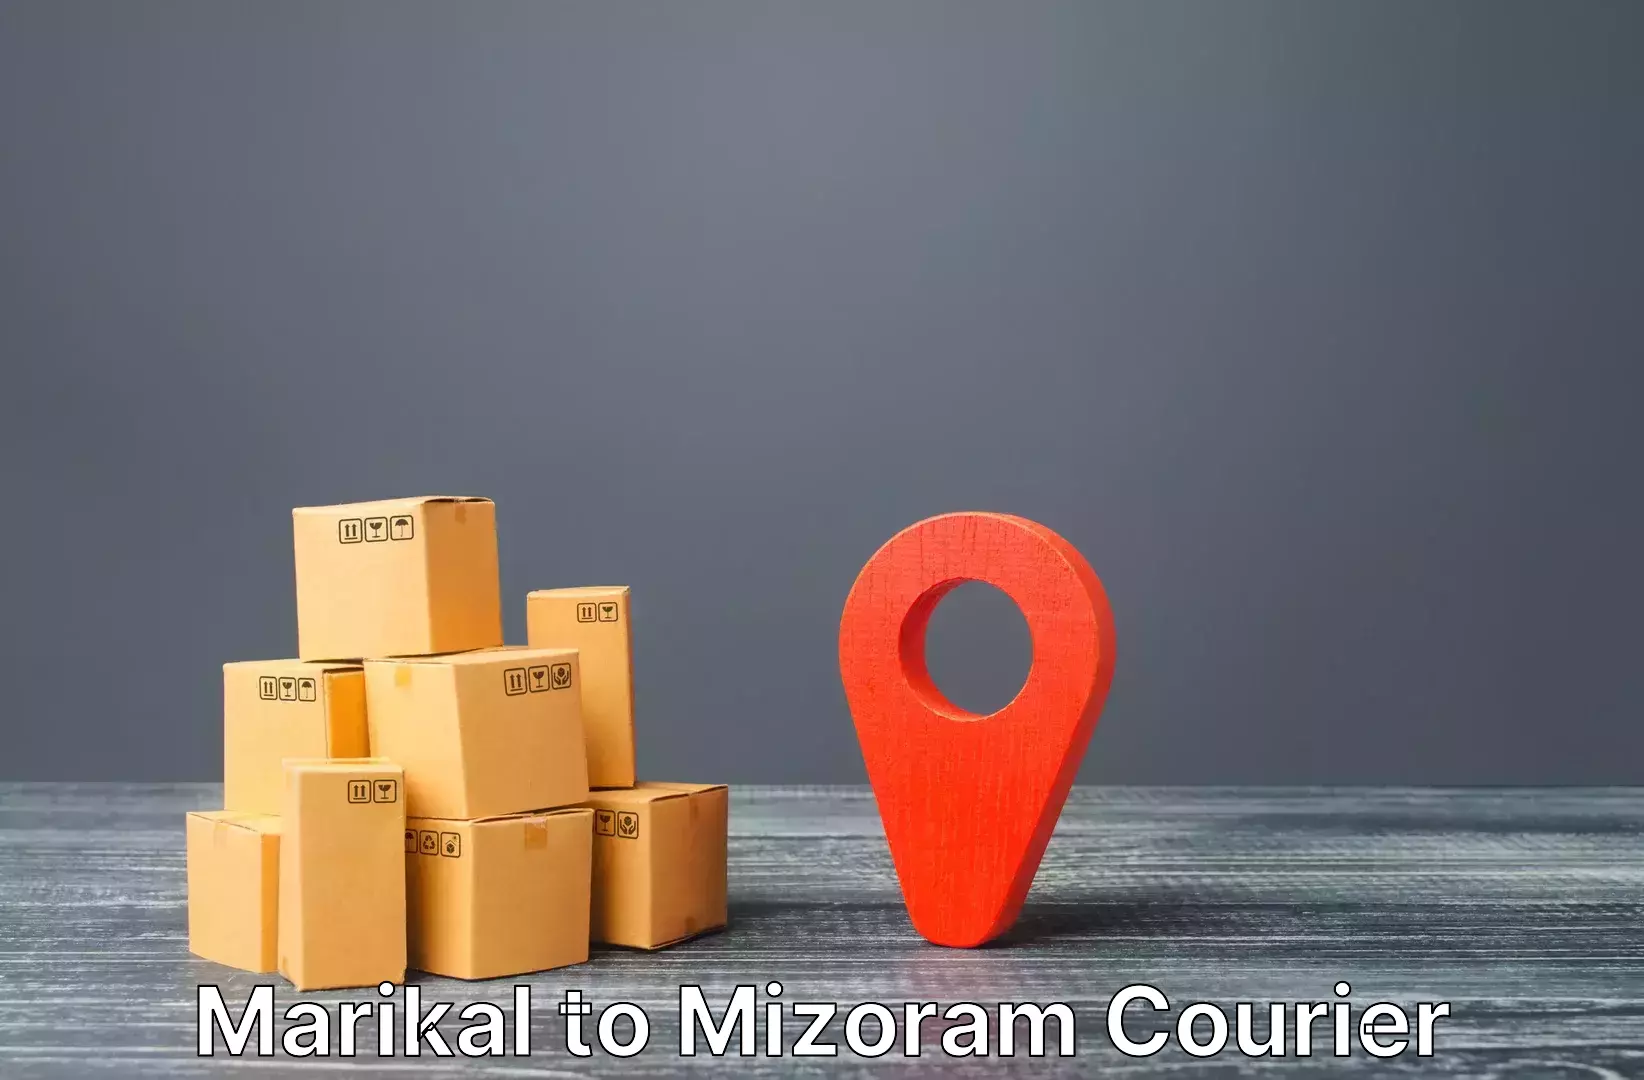 Luggage shipment specialists Marikal to Mizoram